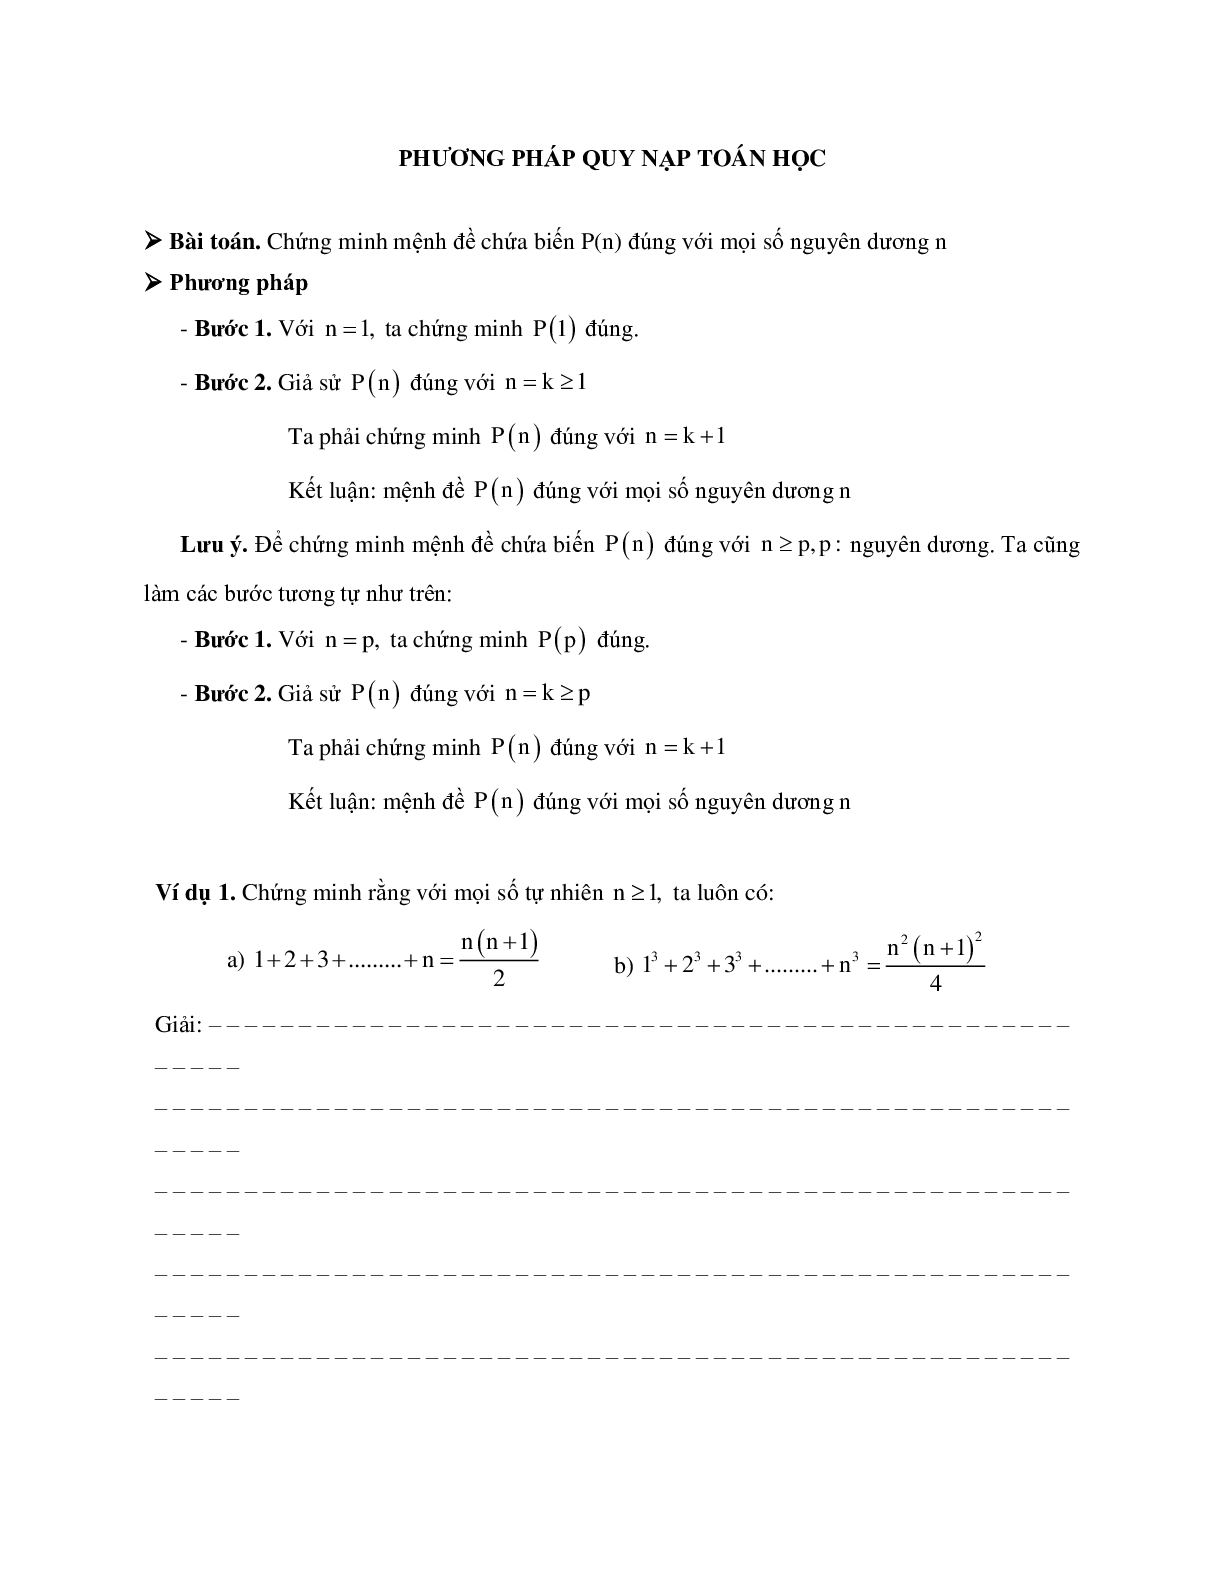 Phương pháp giải về Phương pháp quy nạp toán học 2023 (lý thuyết và bài tập) (trang 1)